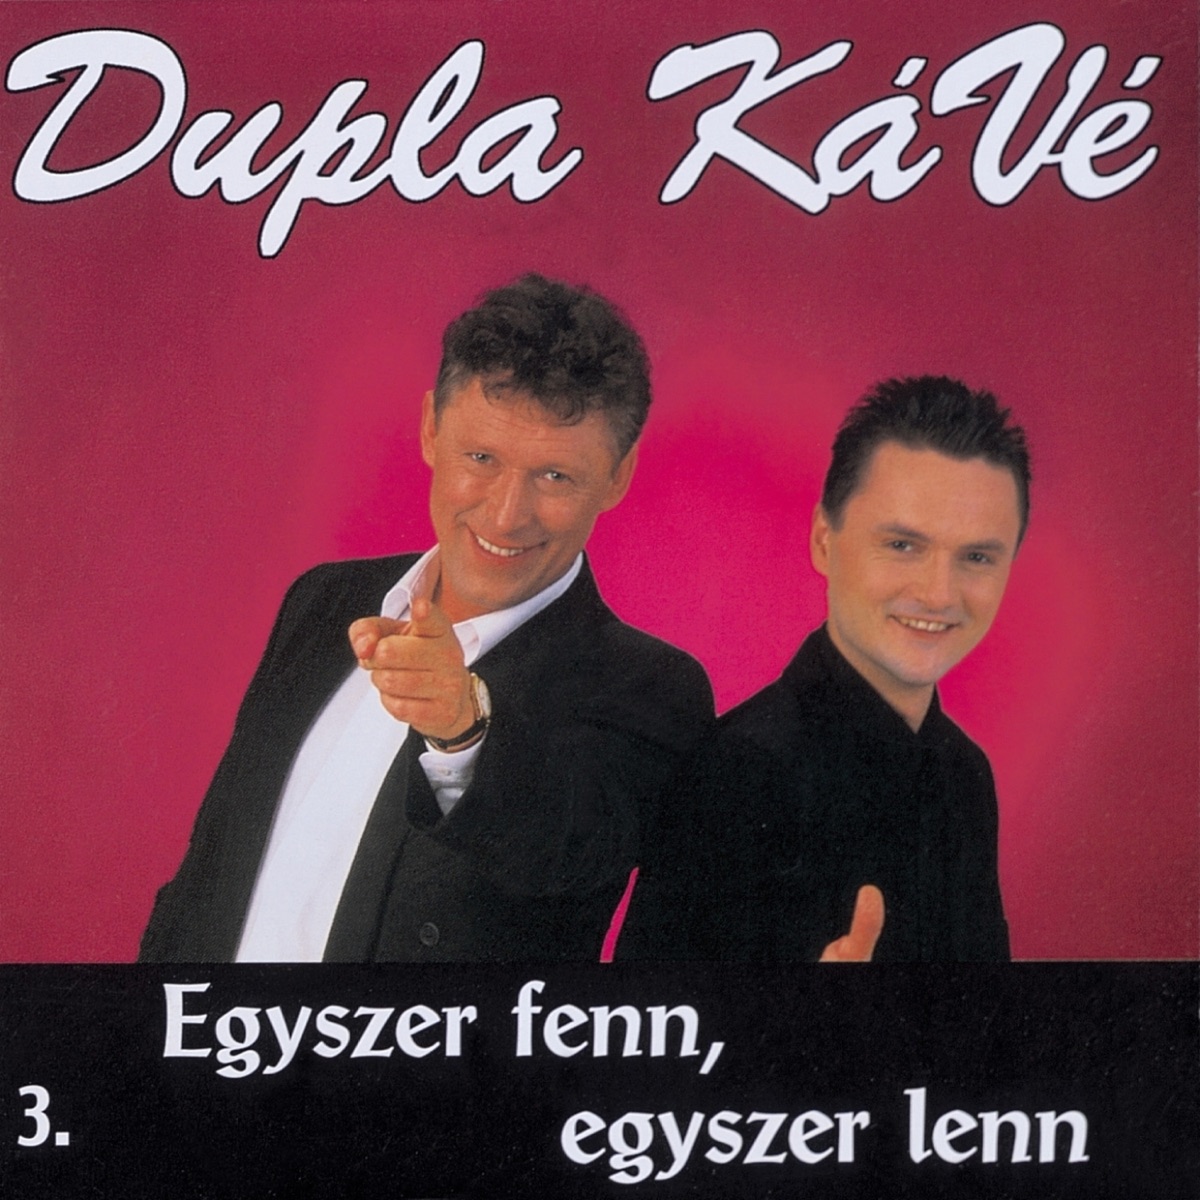 Szegfű by Dupla KáVé on Apple Music